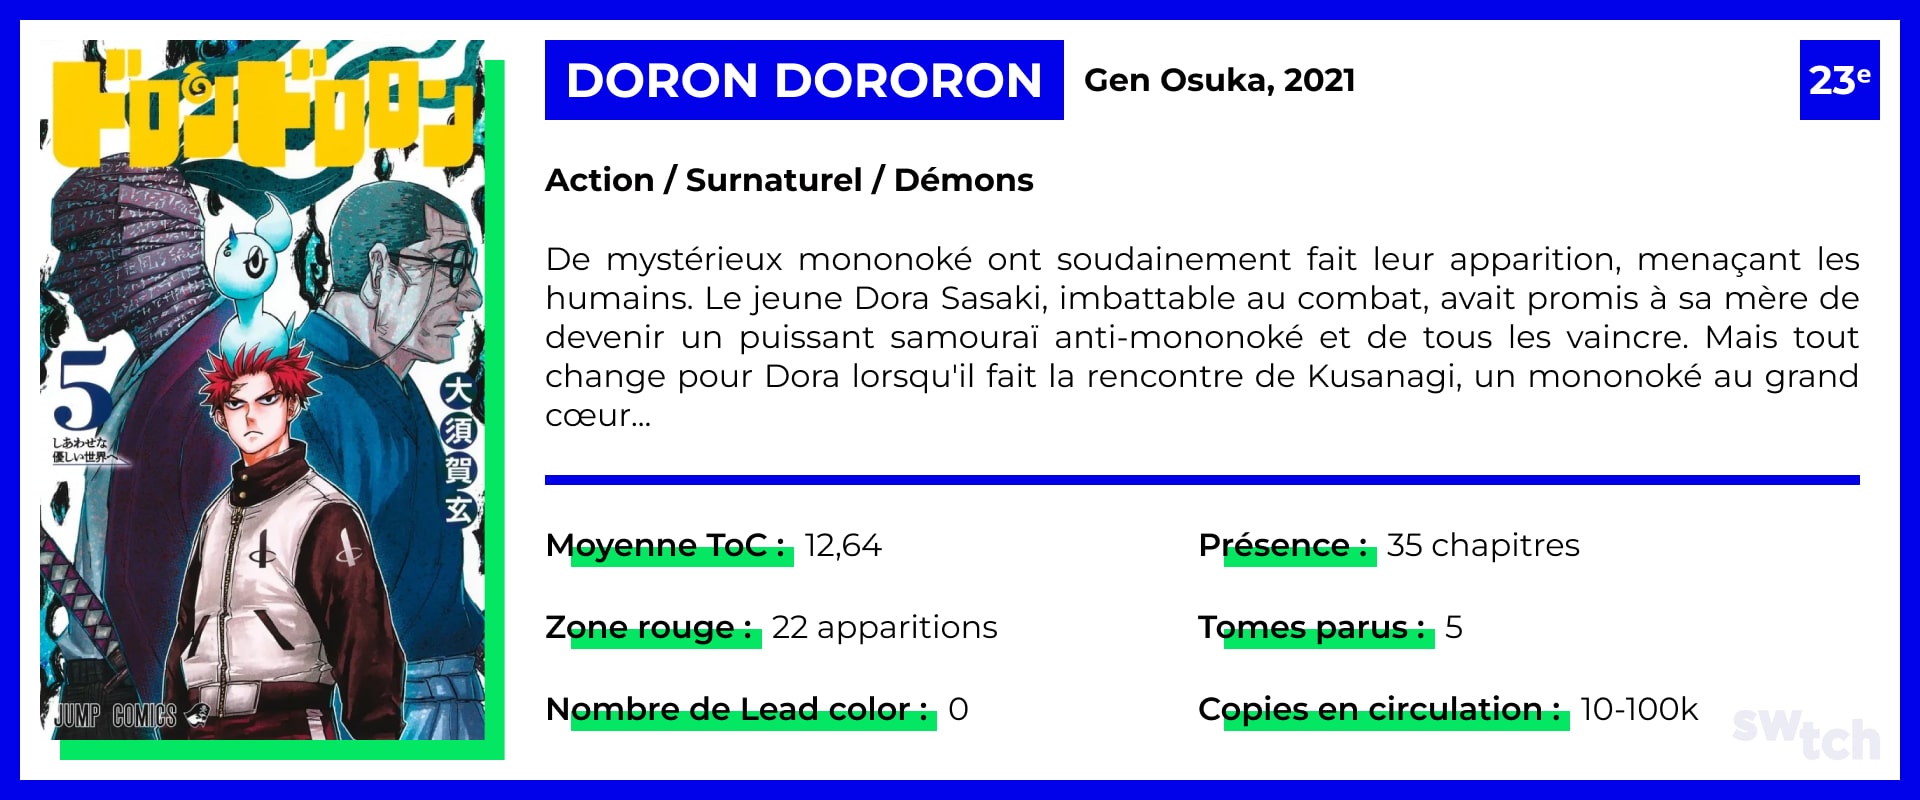 Doron Dororon